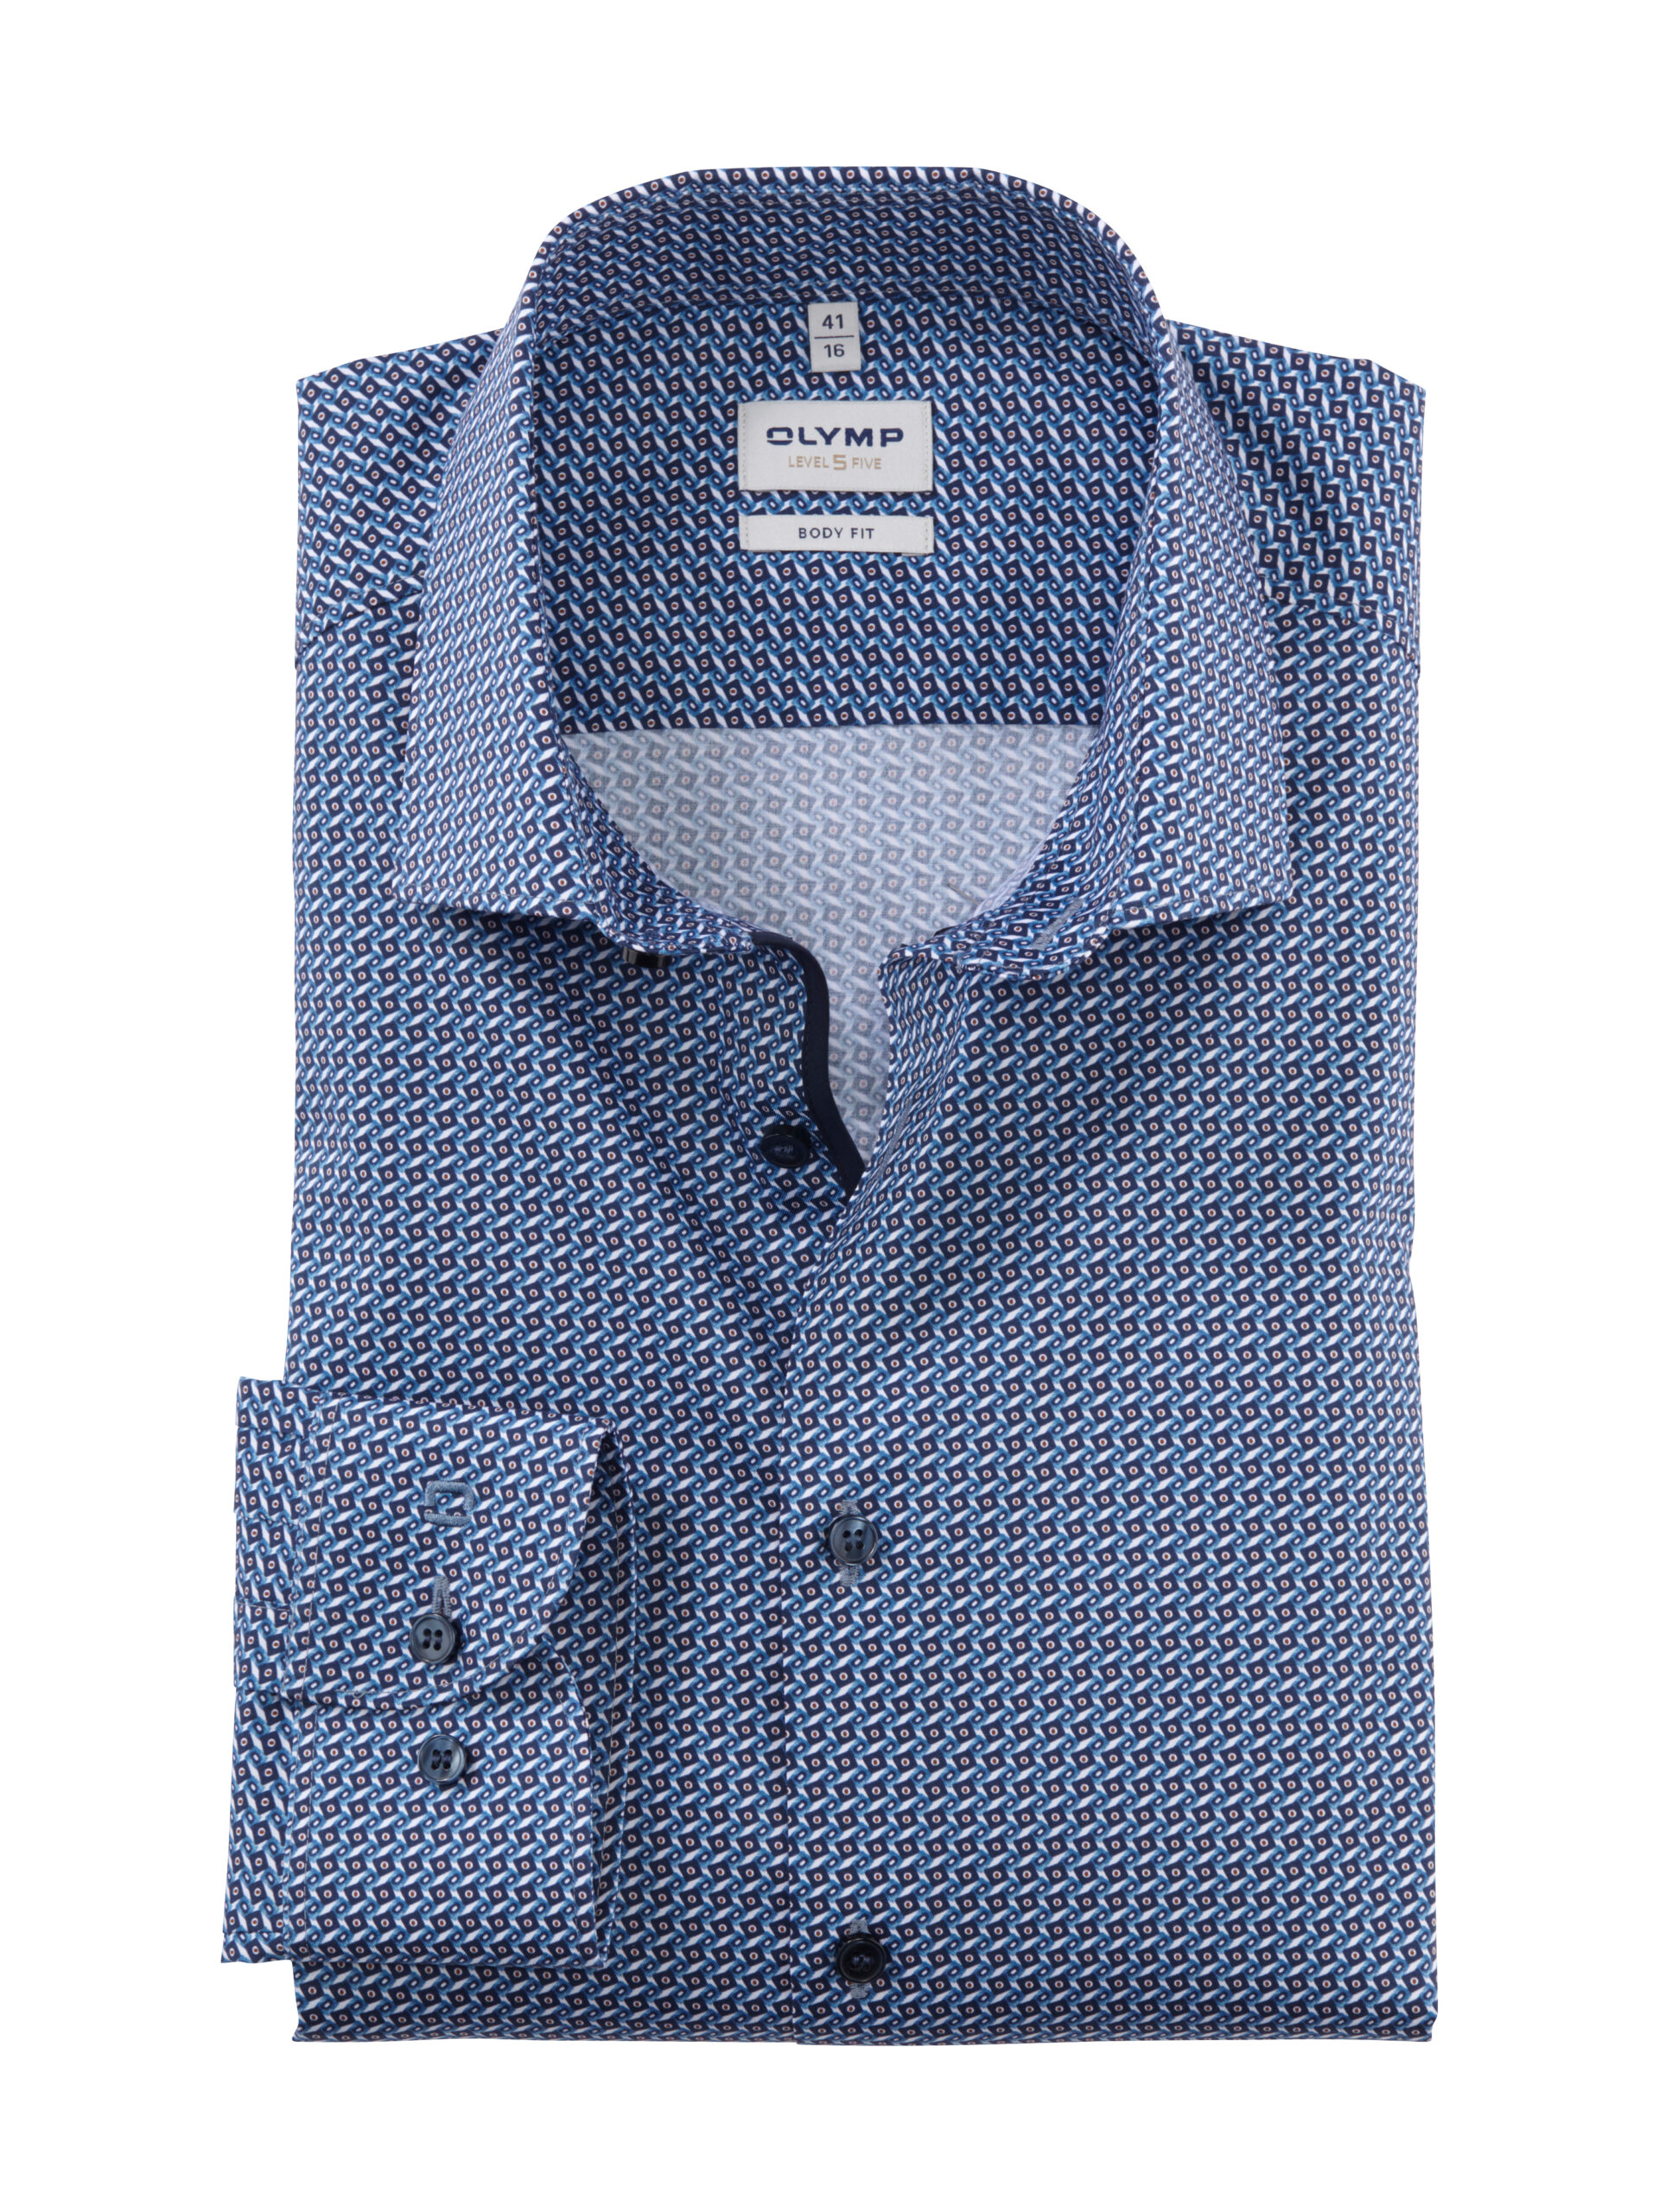 kopen Nationaal dump Heren overhemden - Dock 54 - Mannenmode - De beste merken